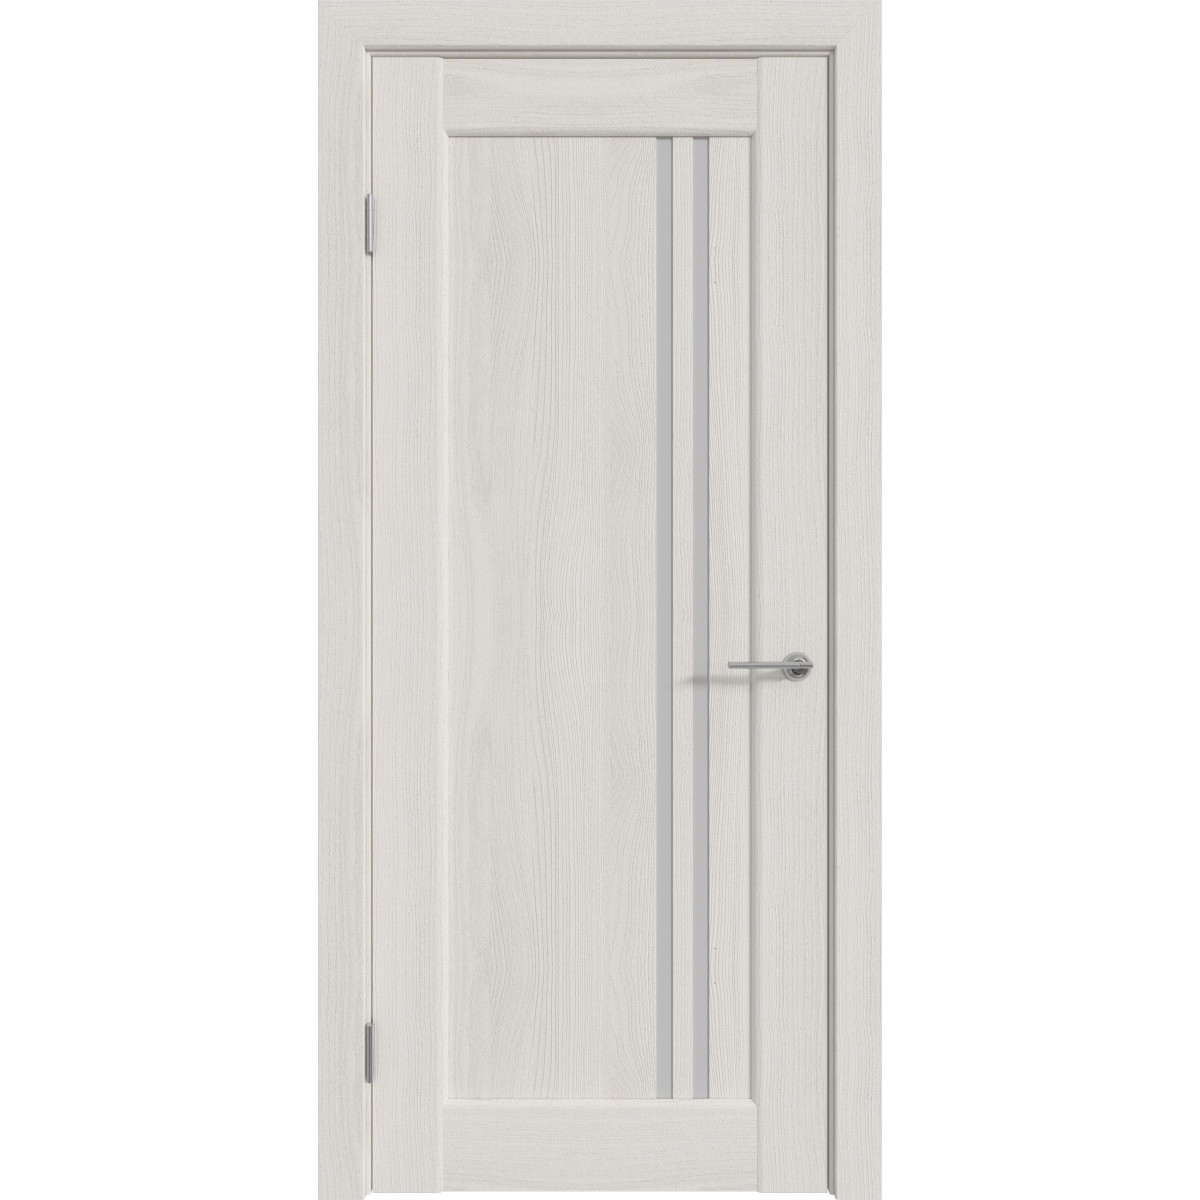 Дверь межкомнатная остеклённая с замком и петлями в комплекте Дельта вертикальная 70x200 см ПВХ цвет белёный дуб